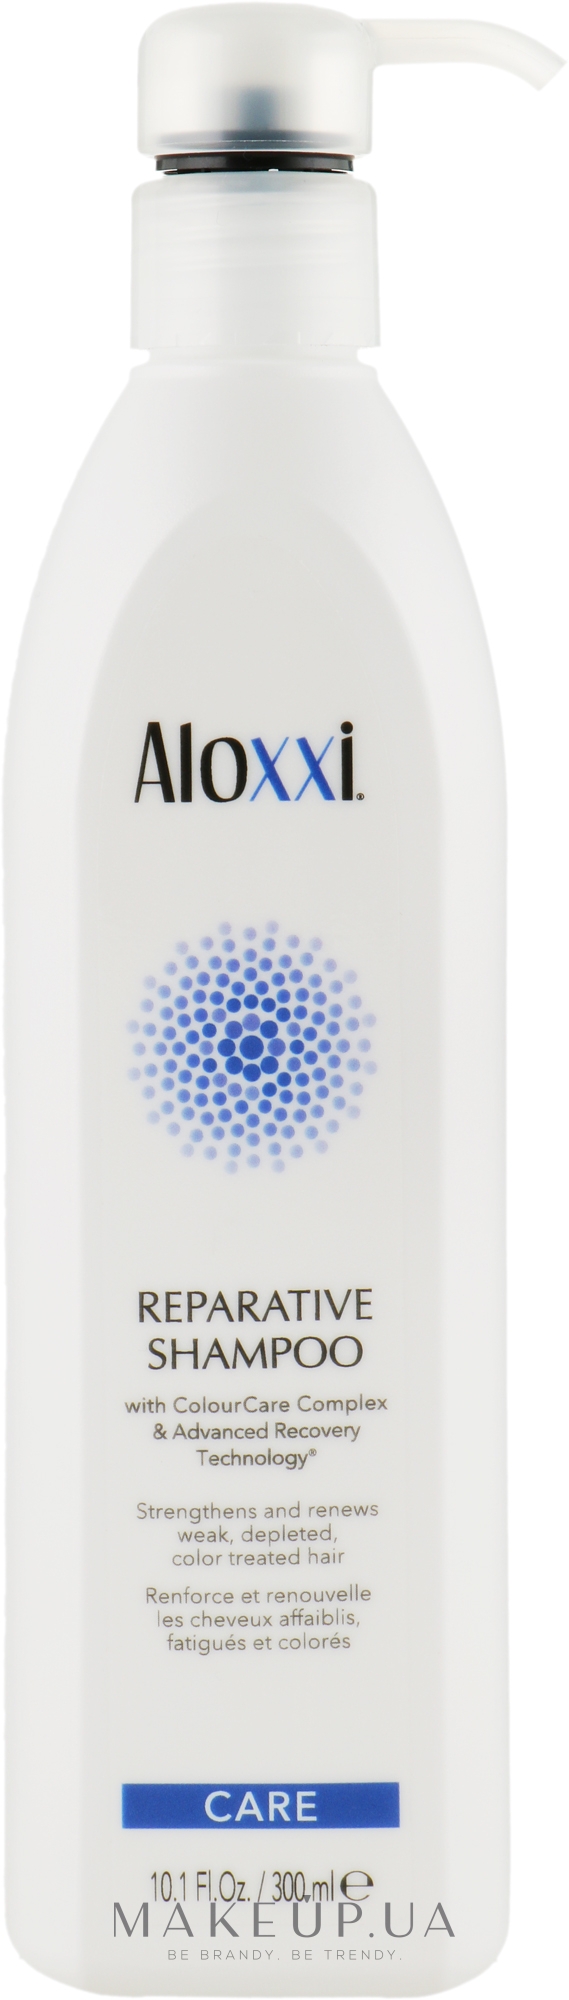 Восстанавливающий шампунь для волос - Aloxxi Reparative Shampoo — фото 300ml